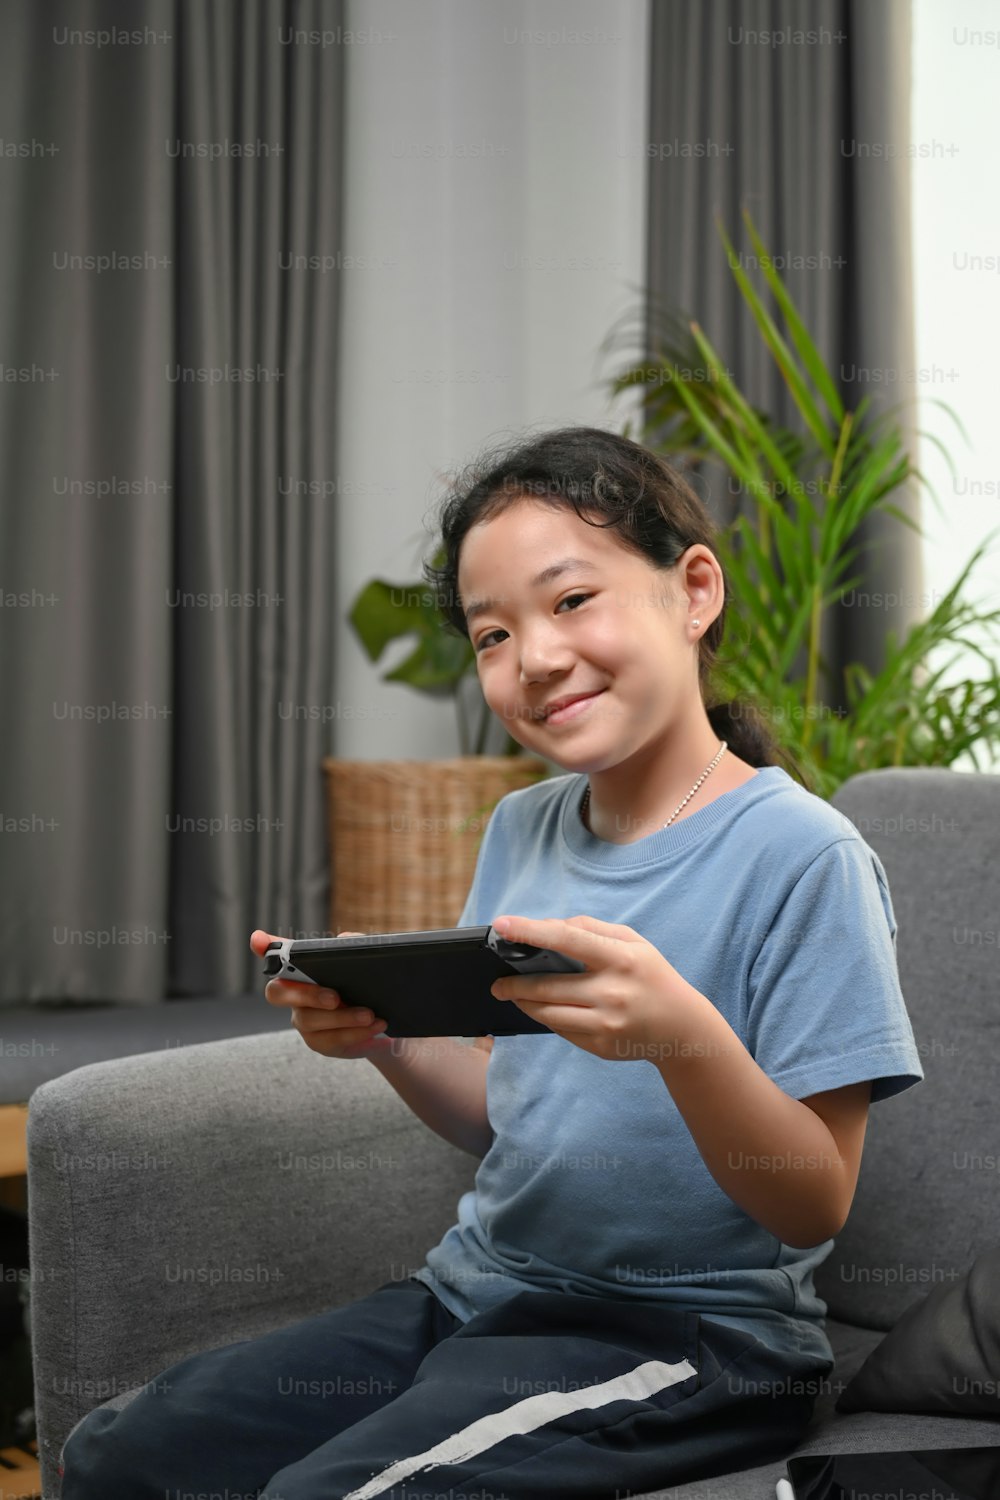 집에서 소파에 앉아 비디오 게임을 하는 행복한 어린 소녀의 초상화.